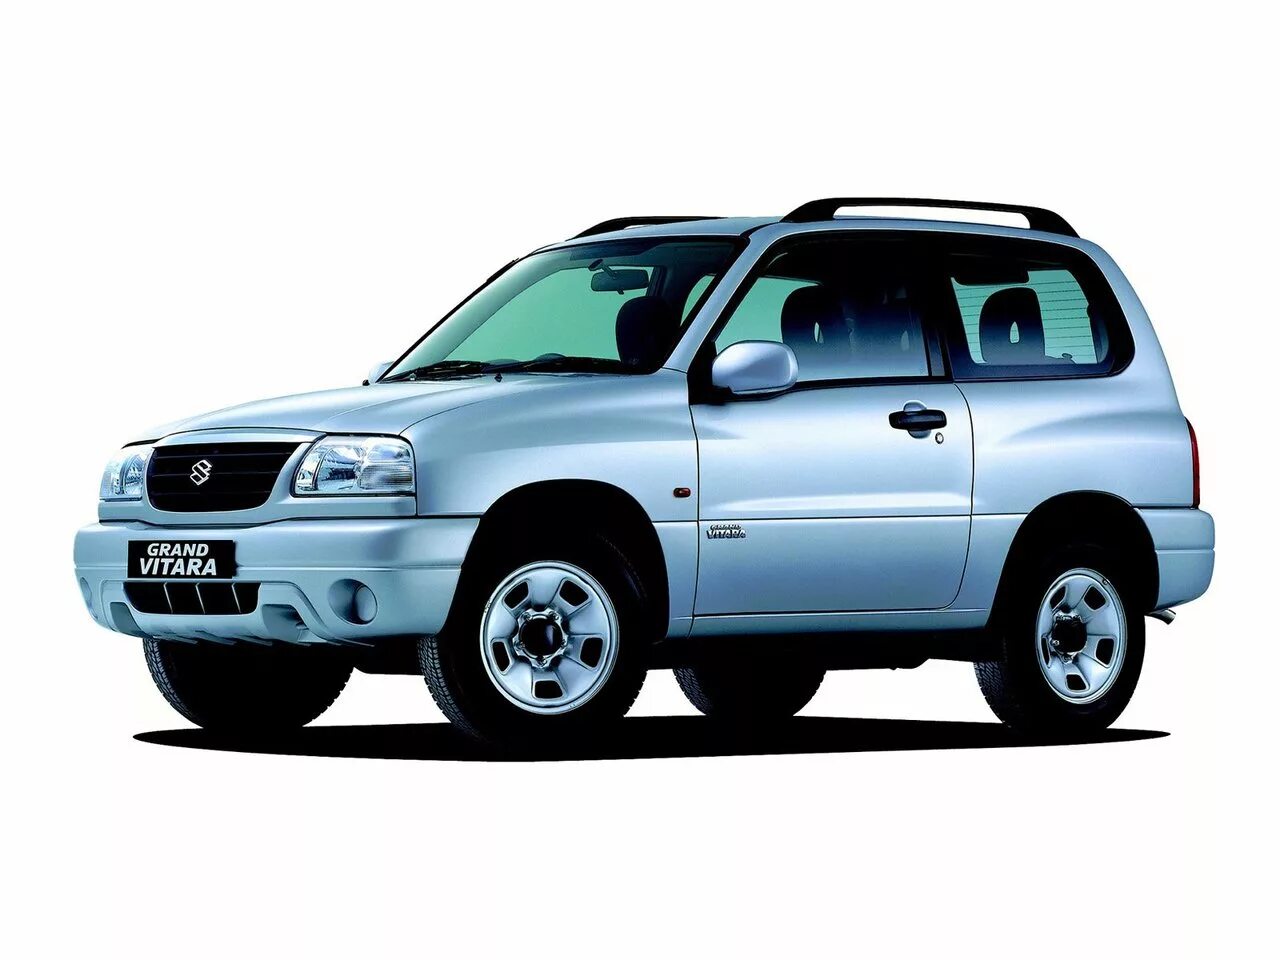 Vitara 2000. Suzuki Grand Vitara 2004. Suzuki Grand Vitara 2001-2005. Suzuki Grand Vitara 1997. Suzuki Grand Vitara 2000.